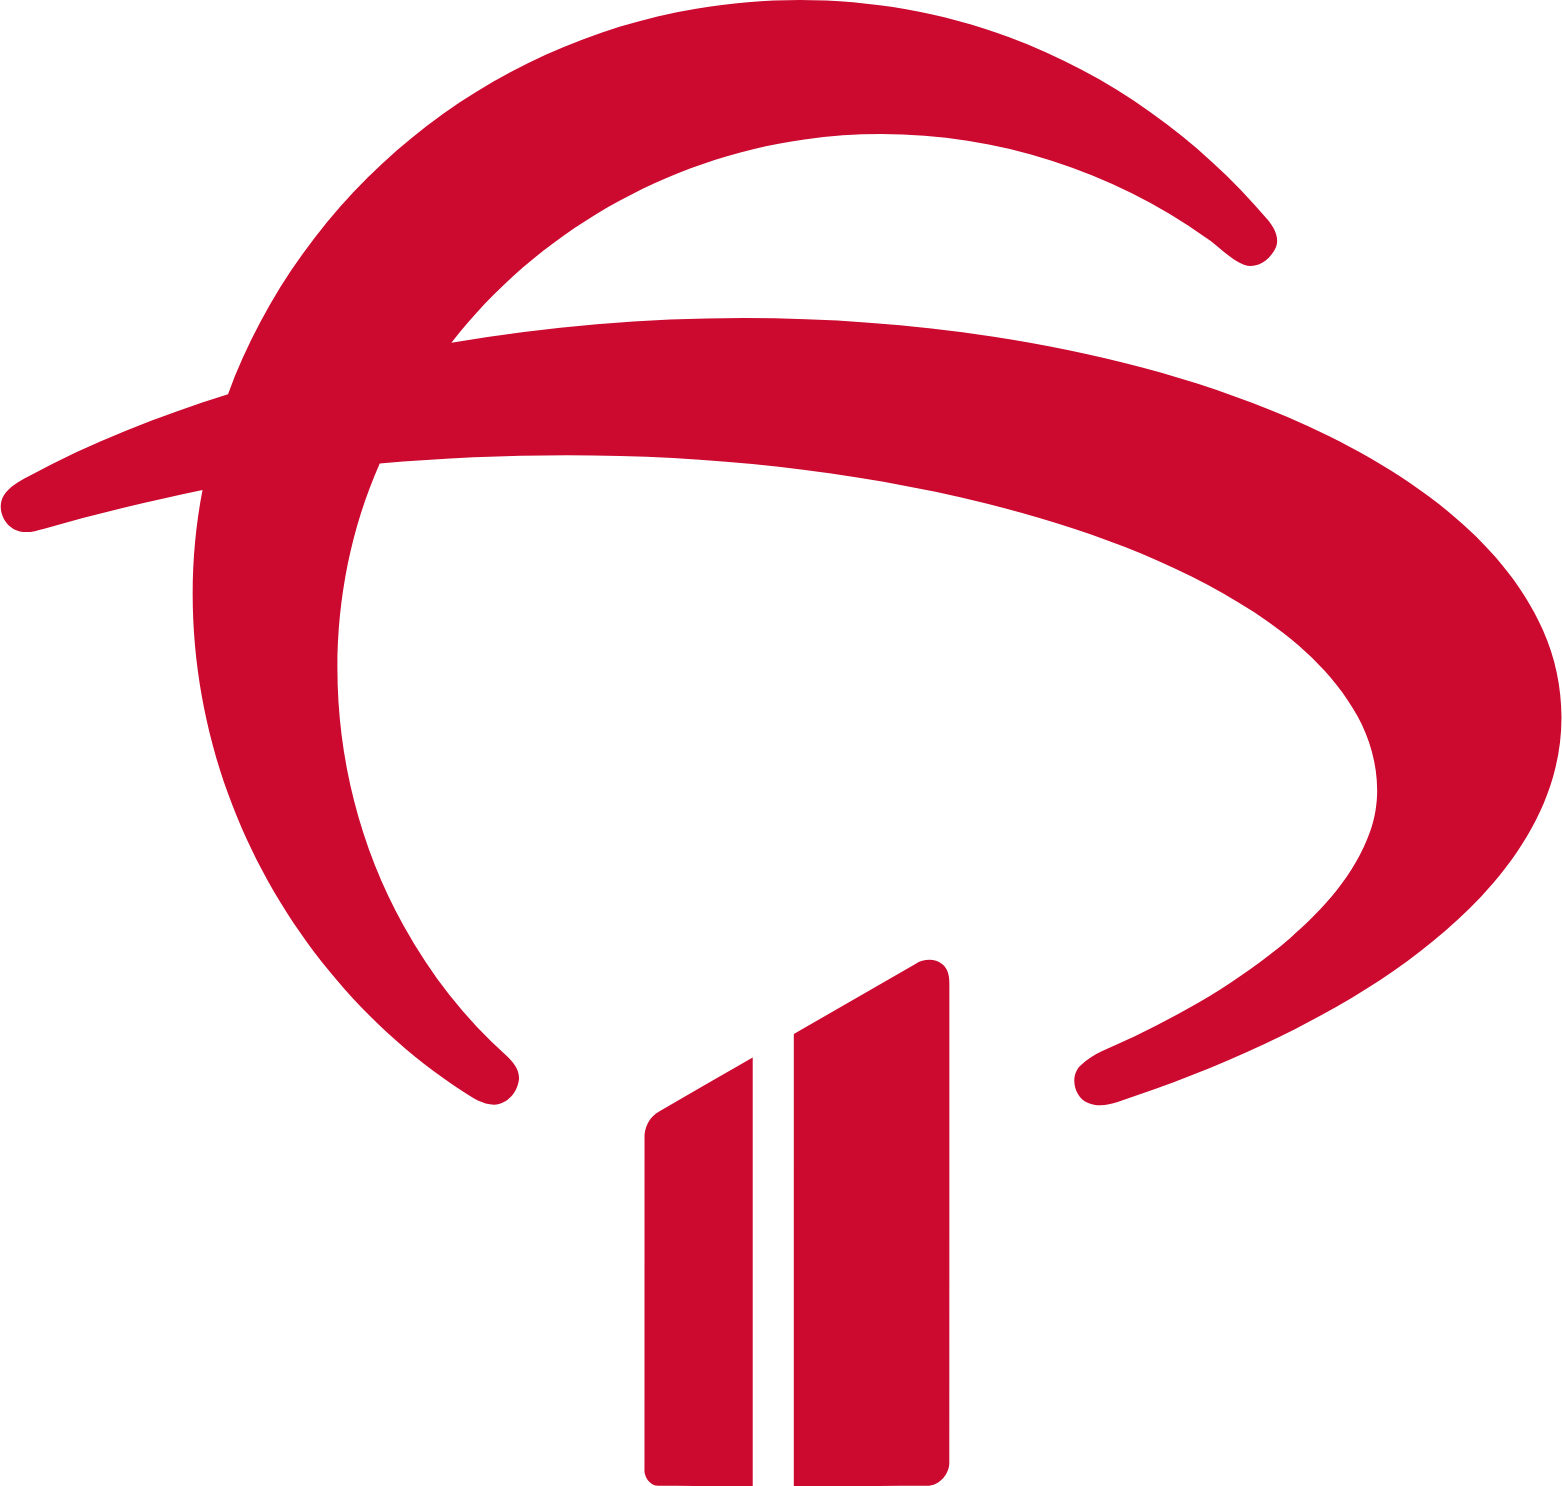 Banco Bradesco logo (transparent PNG)